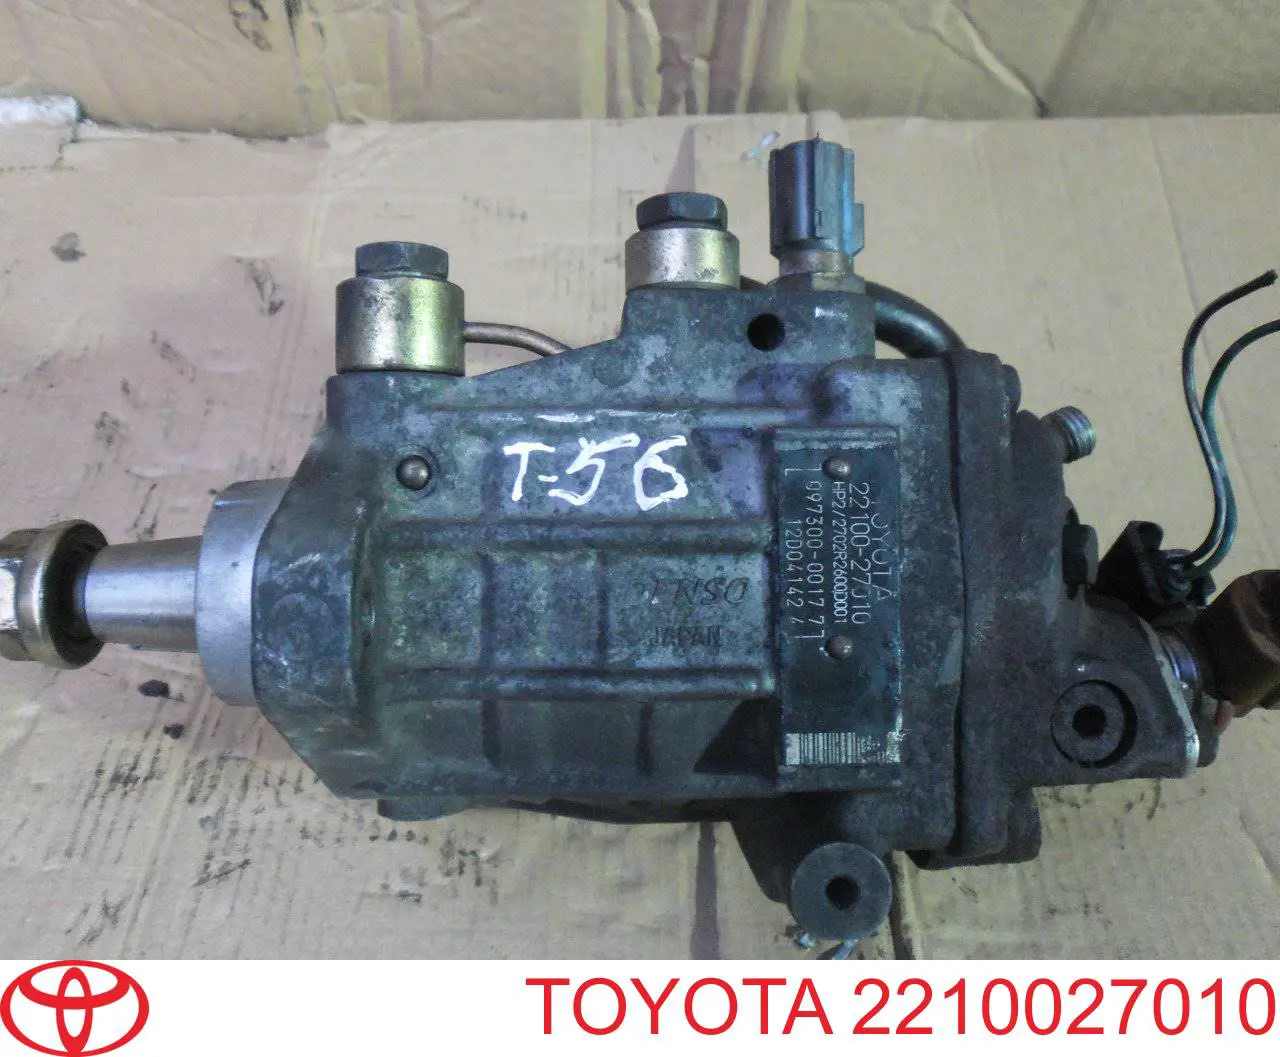 Топливный насос высокого давления Тойота Авенсис T22 (Toyota Avensis)